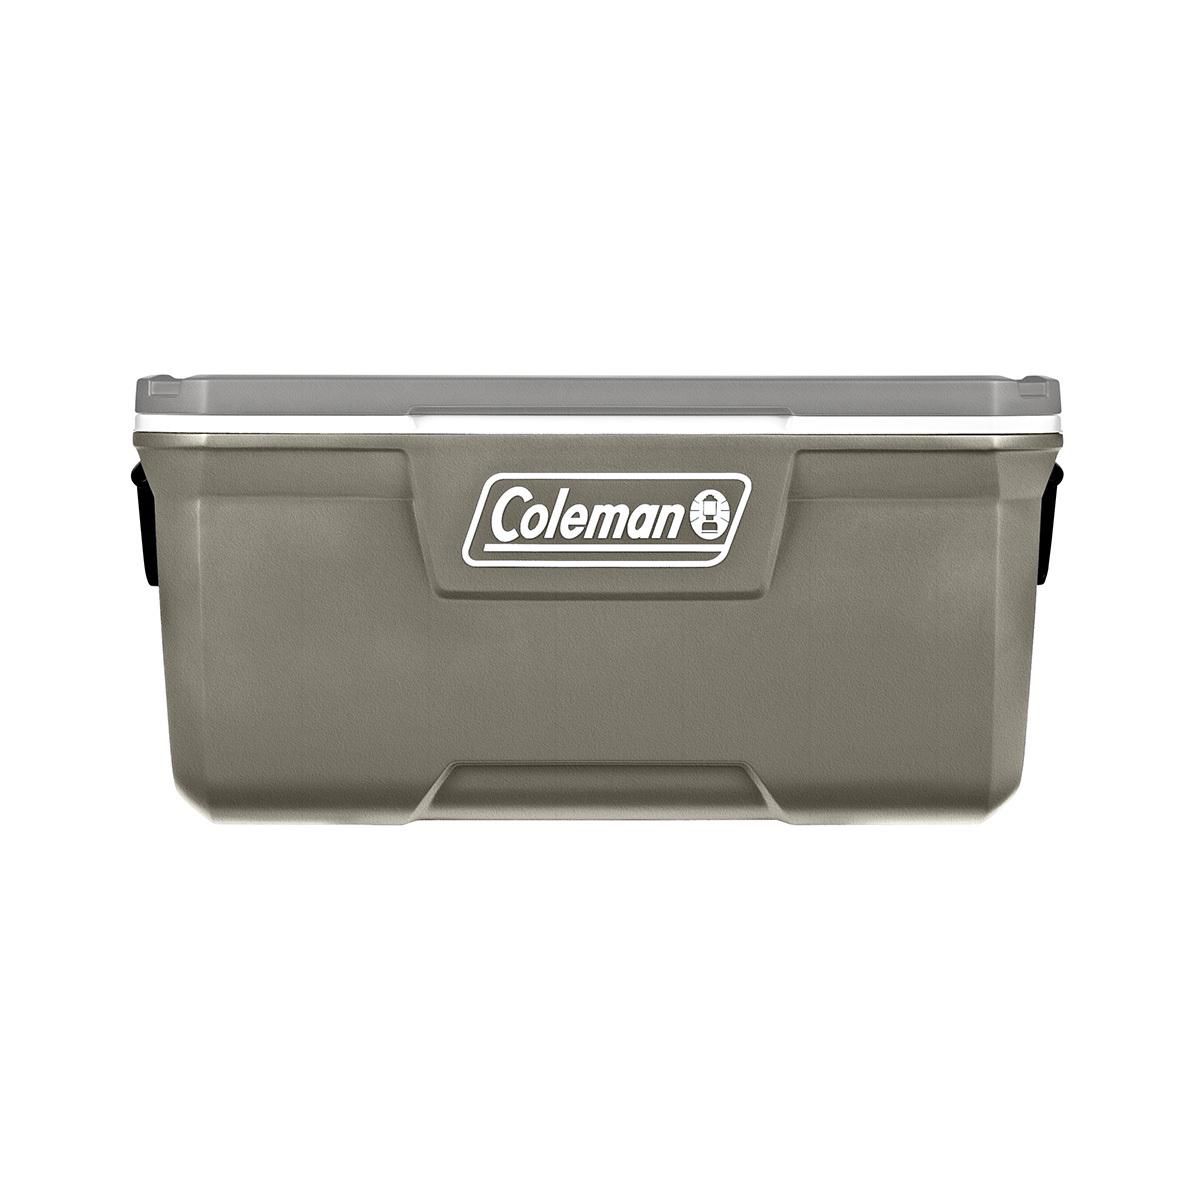 Coleman 316 Series™120-Quart Hard Cooler, Silver Ash, 120 QT/ 113